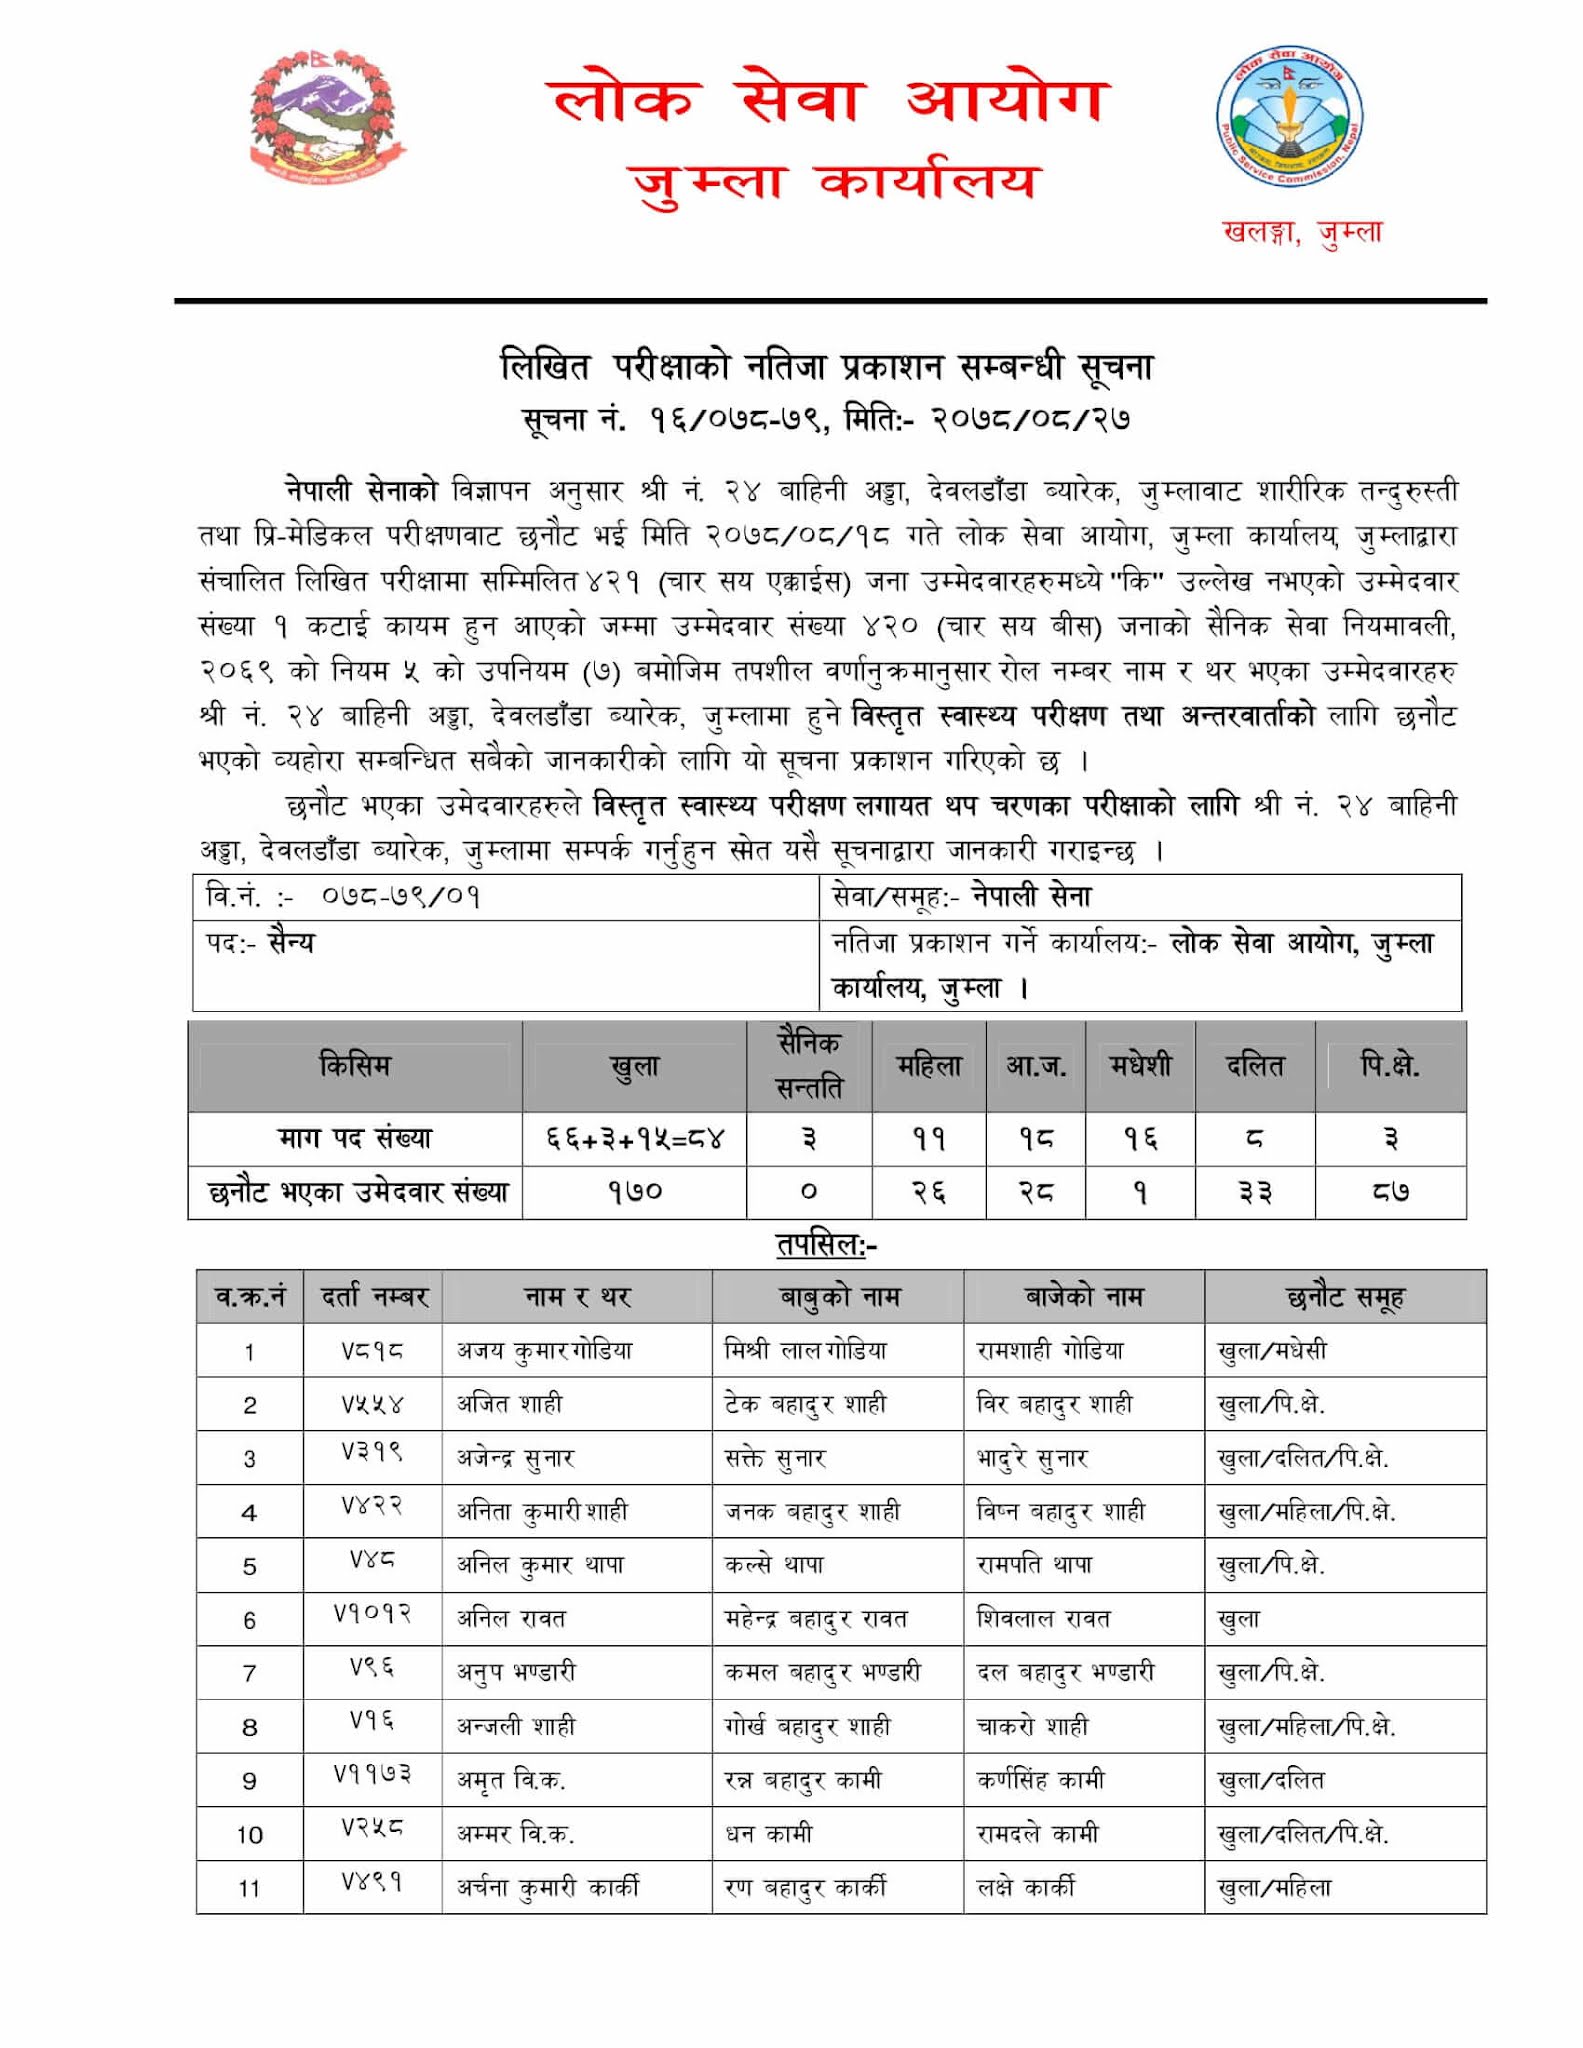 Nepal Army Sainya Written Exam Result Jumla